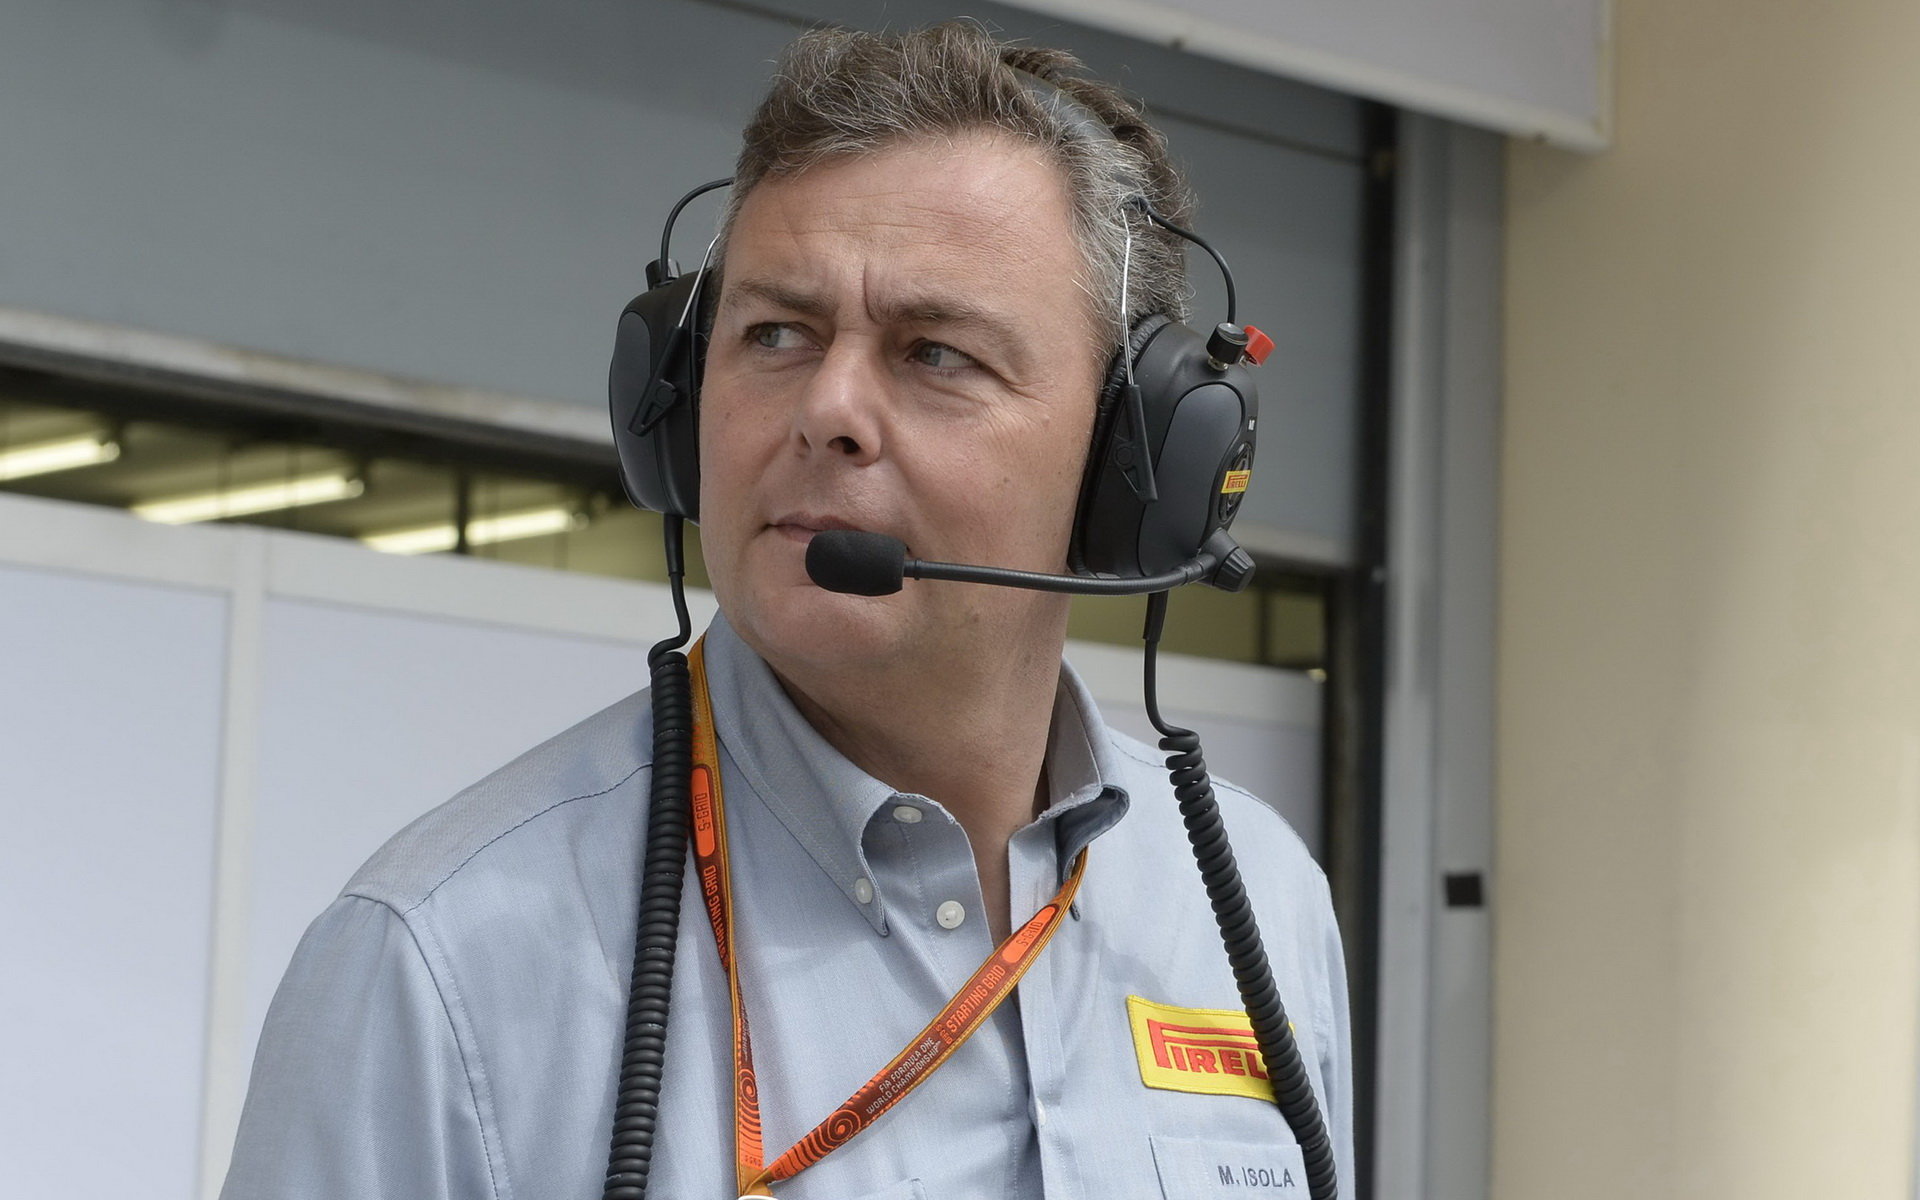 Mario Isola naznačil, že Pirelli pro Silverstone zvažuje změnu